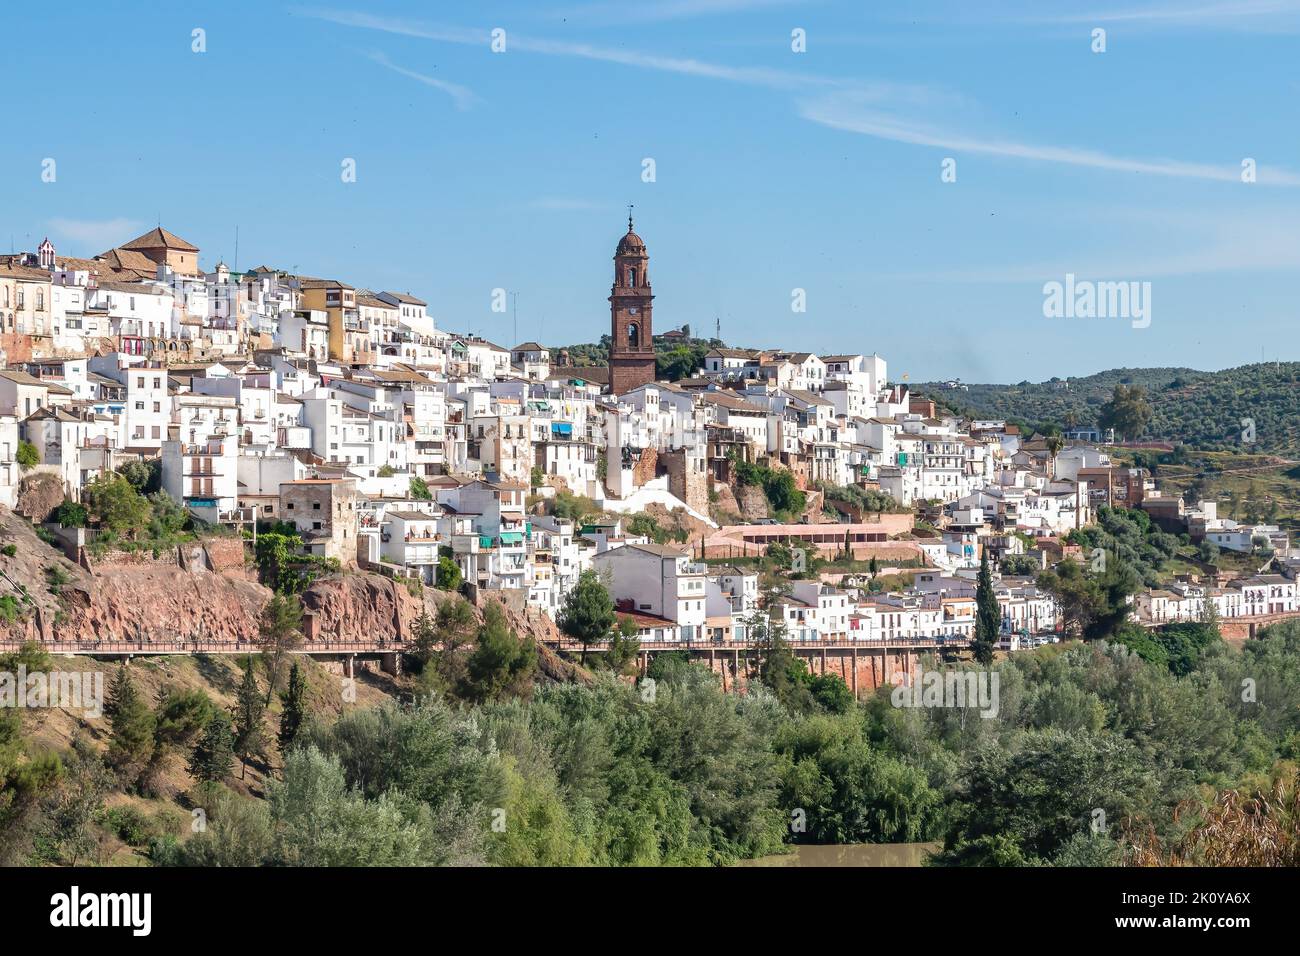 Vista del pueblo de Montoro, ciudad y municipio de la provincia de Córdoba, en la zona centro-norte de La comunidad autónoma De A Foto de stock